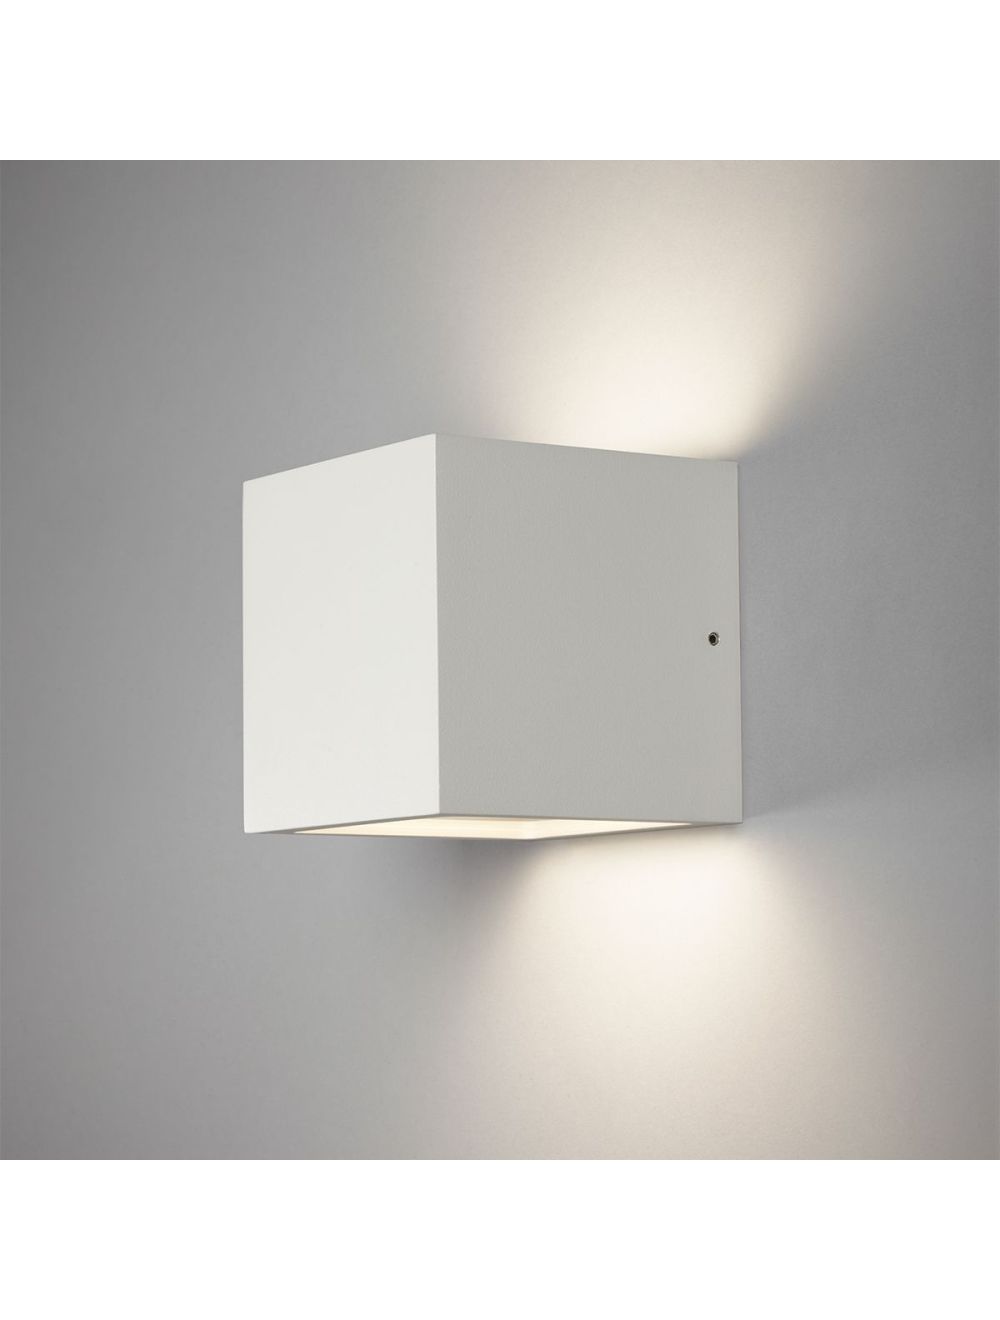 Berri Interpretive Sovereign Cube Væg LED Ude/indendørslampe - Hvid finish